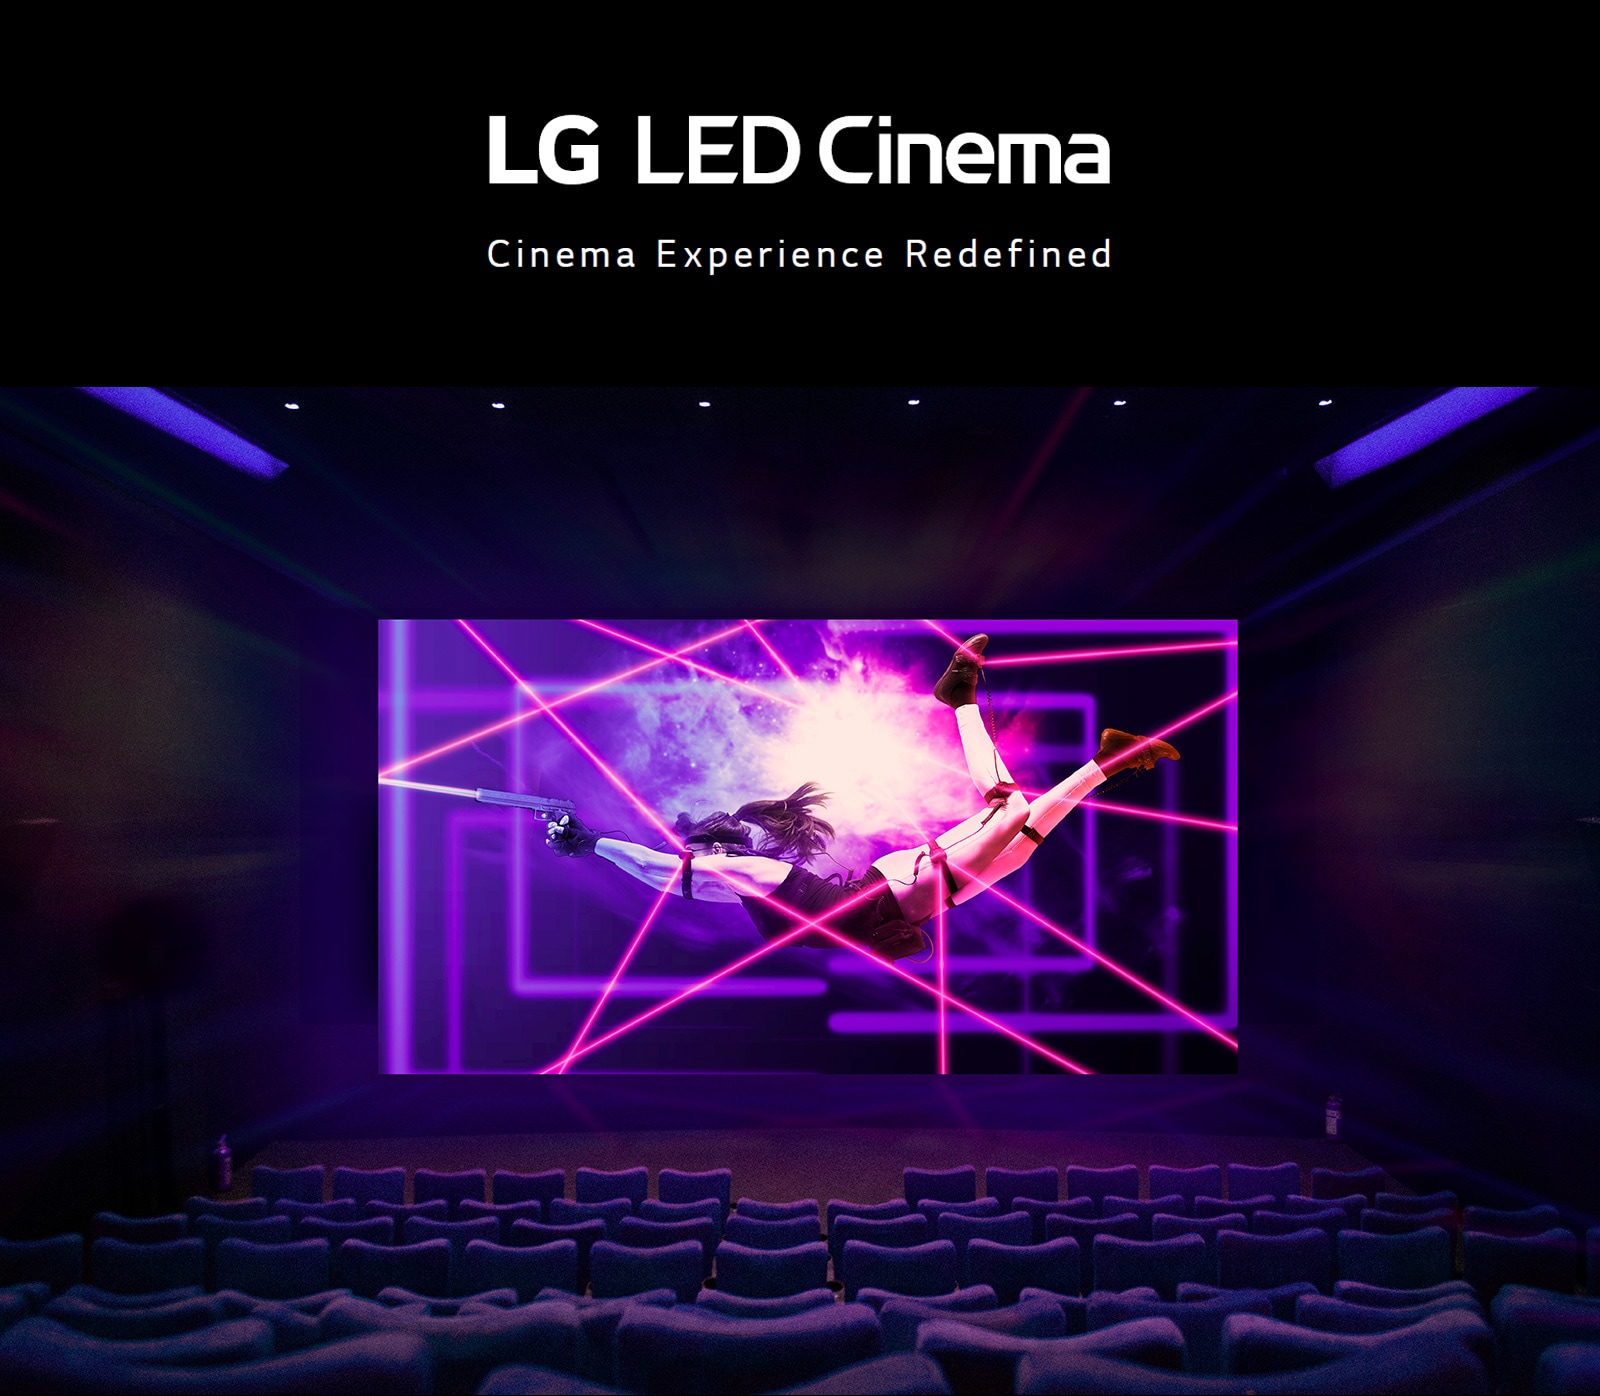 Một màn hình LED lớn đang chiếu những cảnh hành động đầy màu sắc và sống động tại rạp chiếu phim.